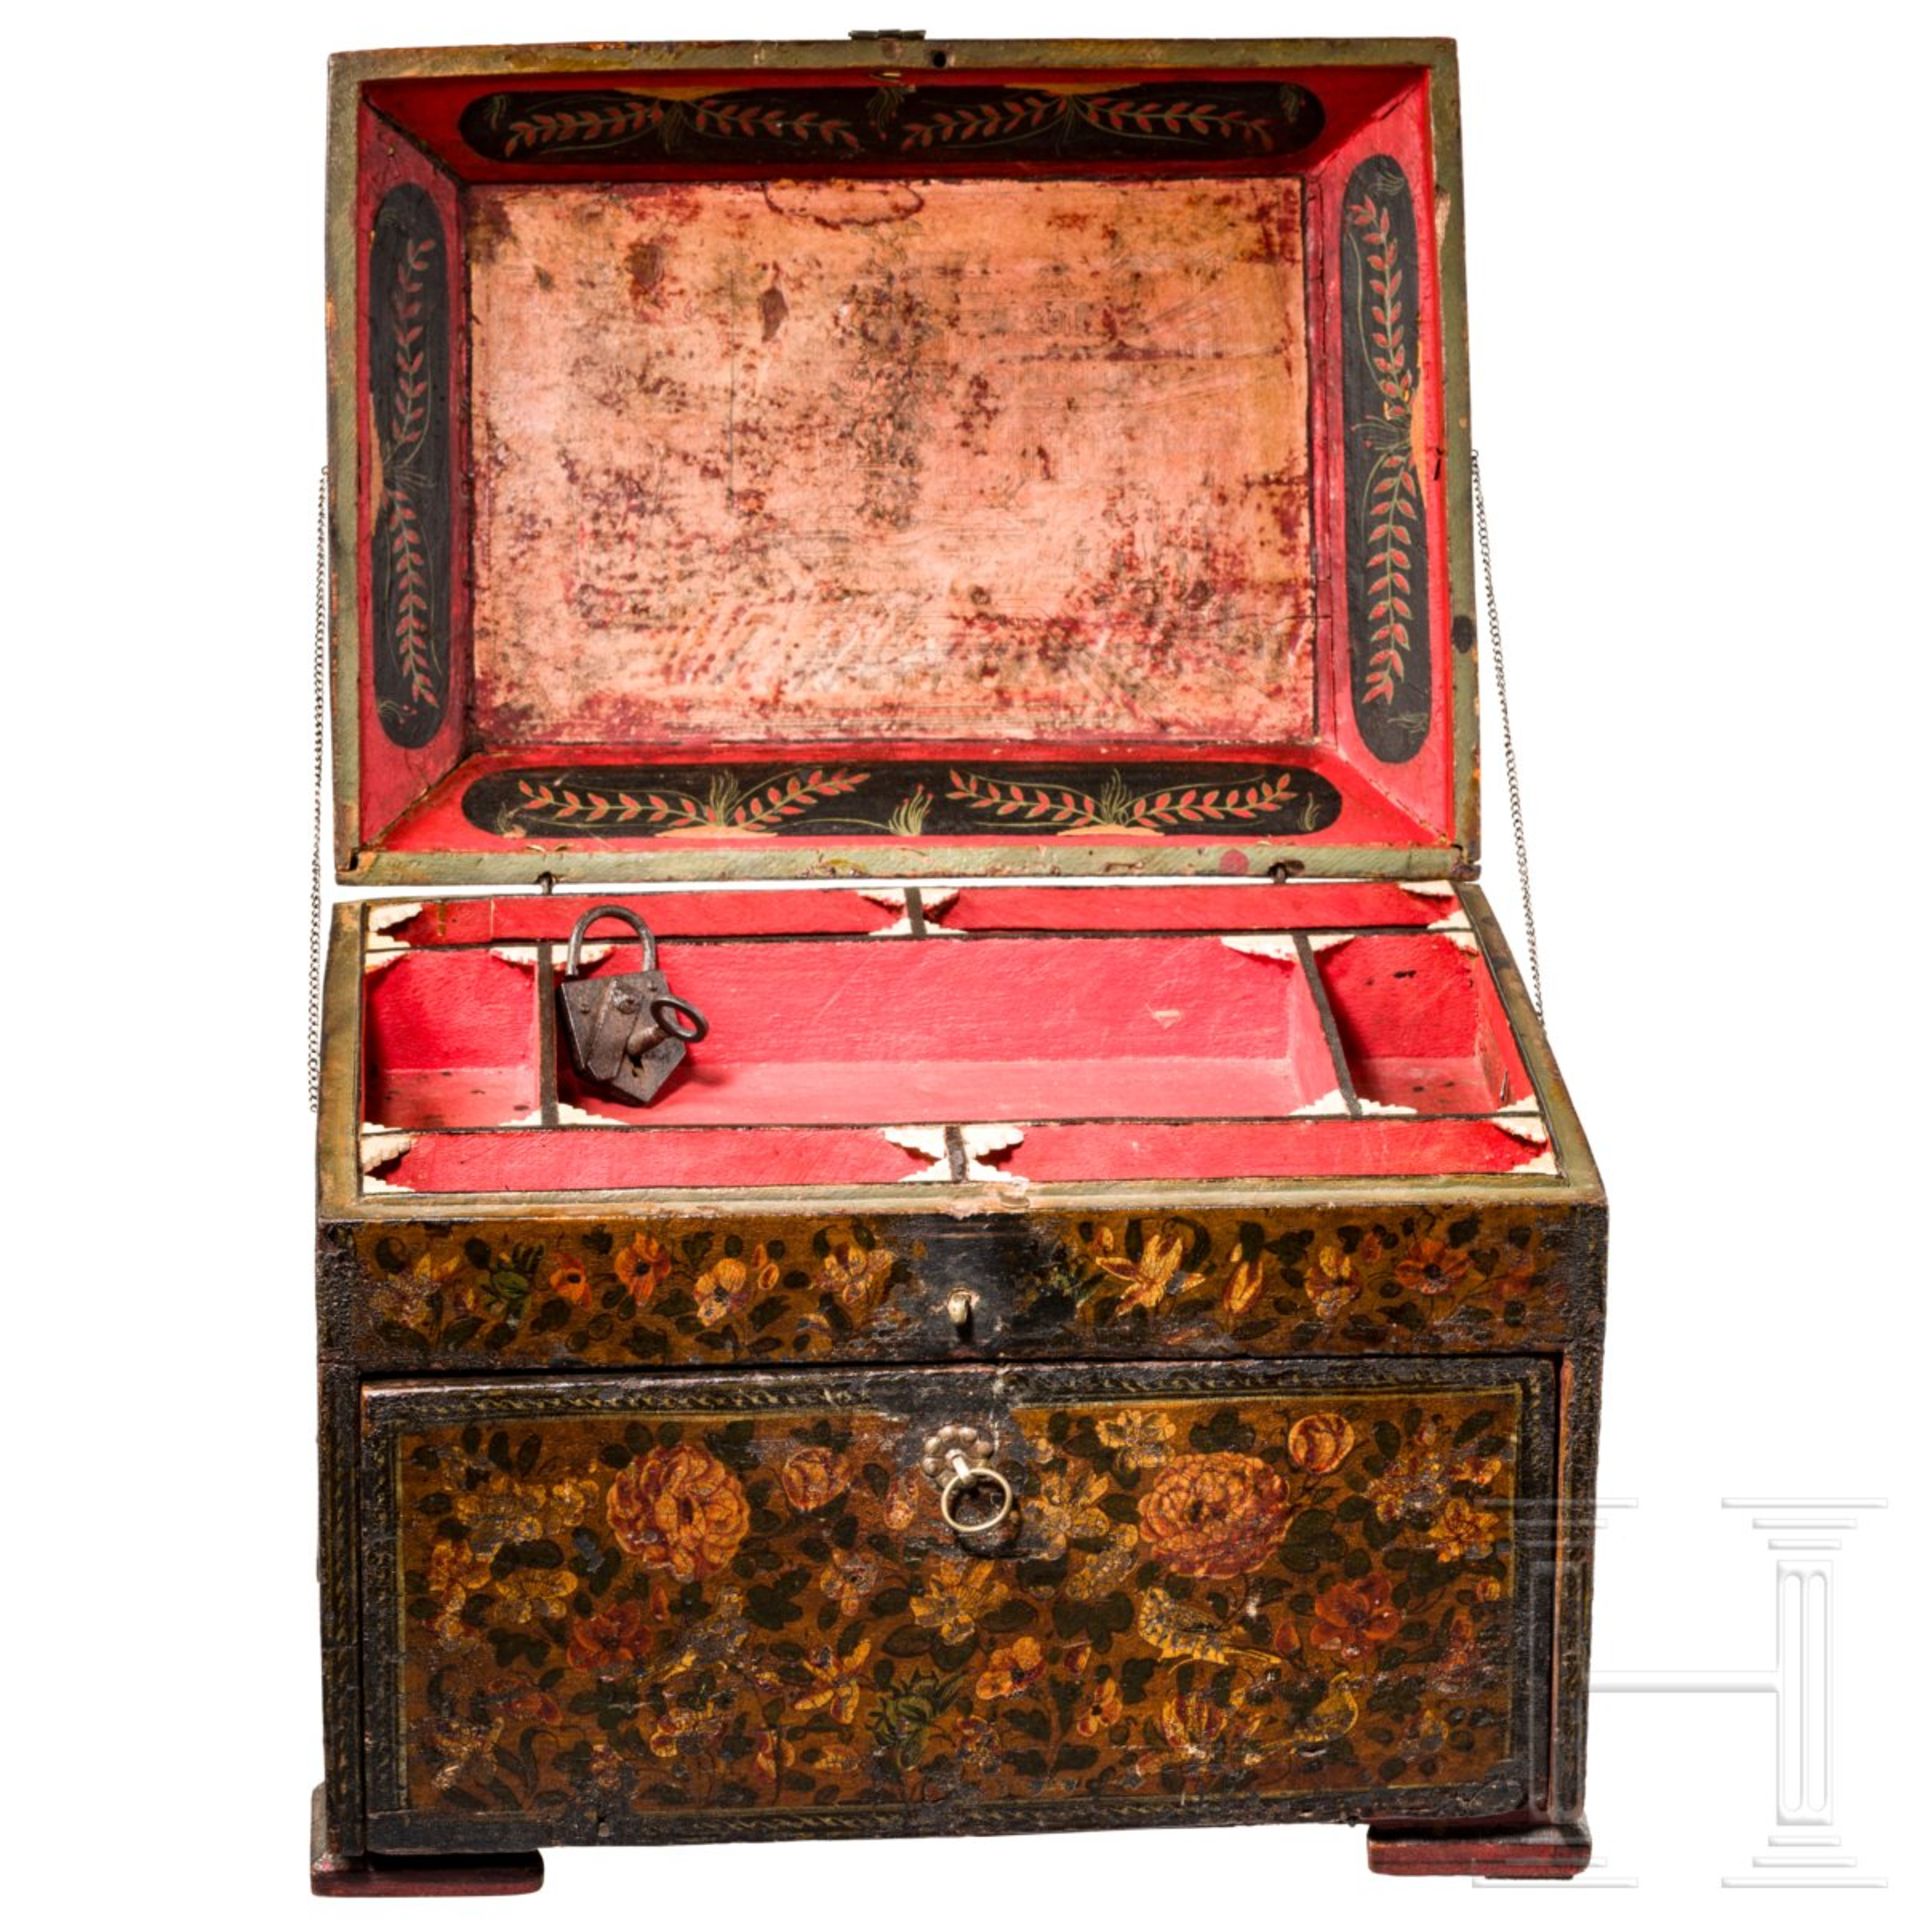 Kabinettkästchen, indopersisch, 1. Hälfte 19. Jhdt.Polychrom mit reichen floralen Ornamenten - Bild 2 aus 7